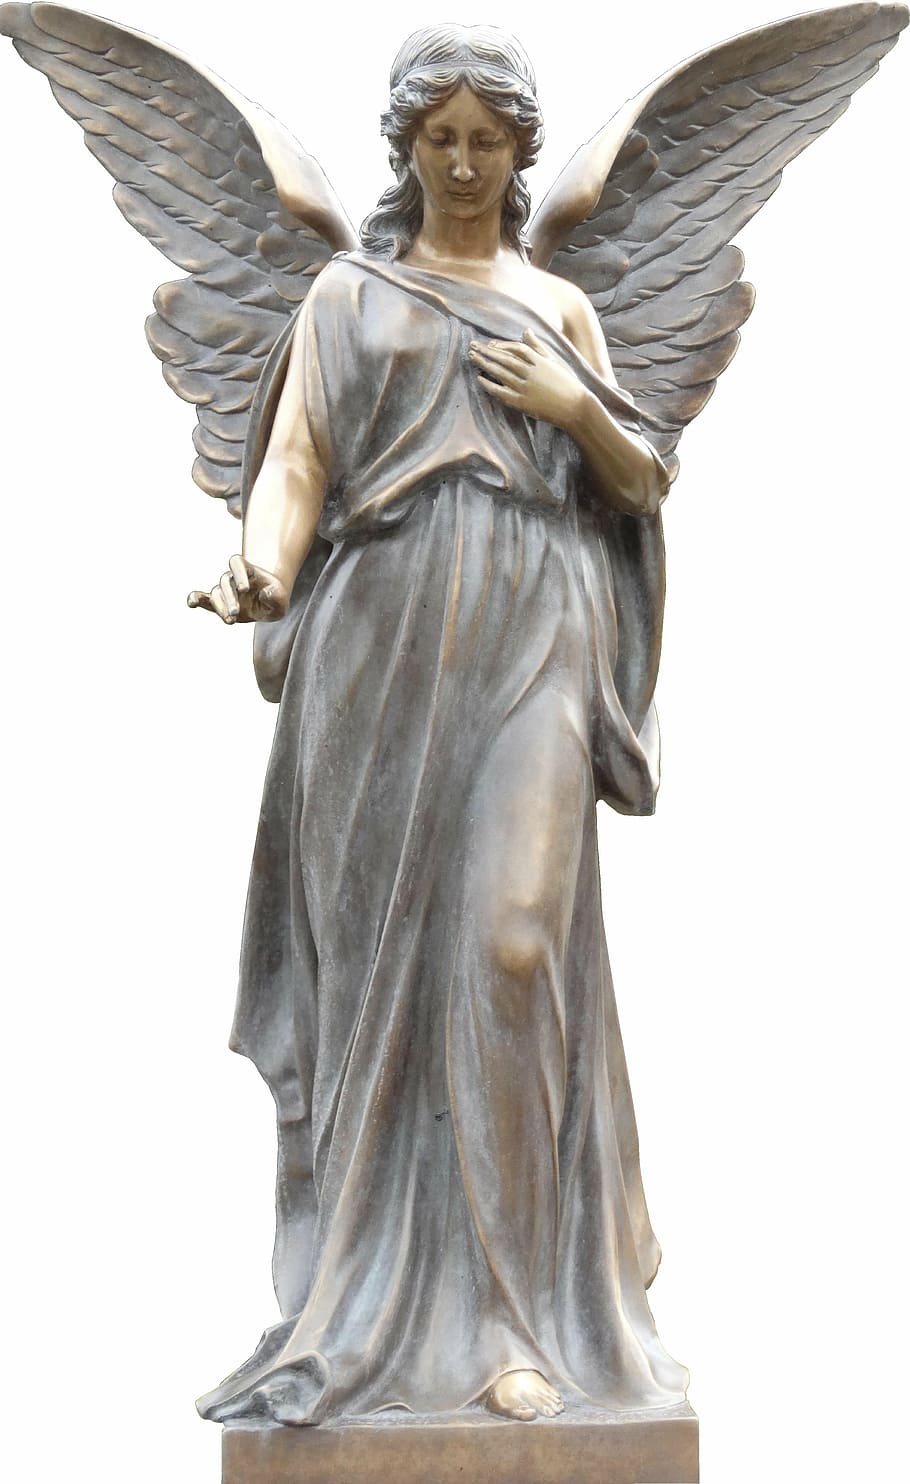 фигурка ангела женского пола, ангел, статуя ангела, статуя, искусство, скульптура, памятник, крыло, человеческое изображение, искусство и ремесло